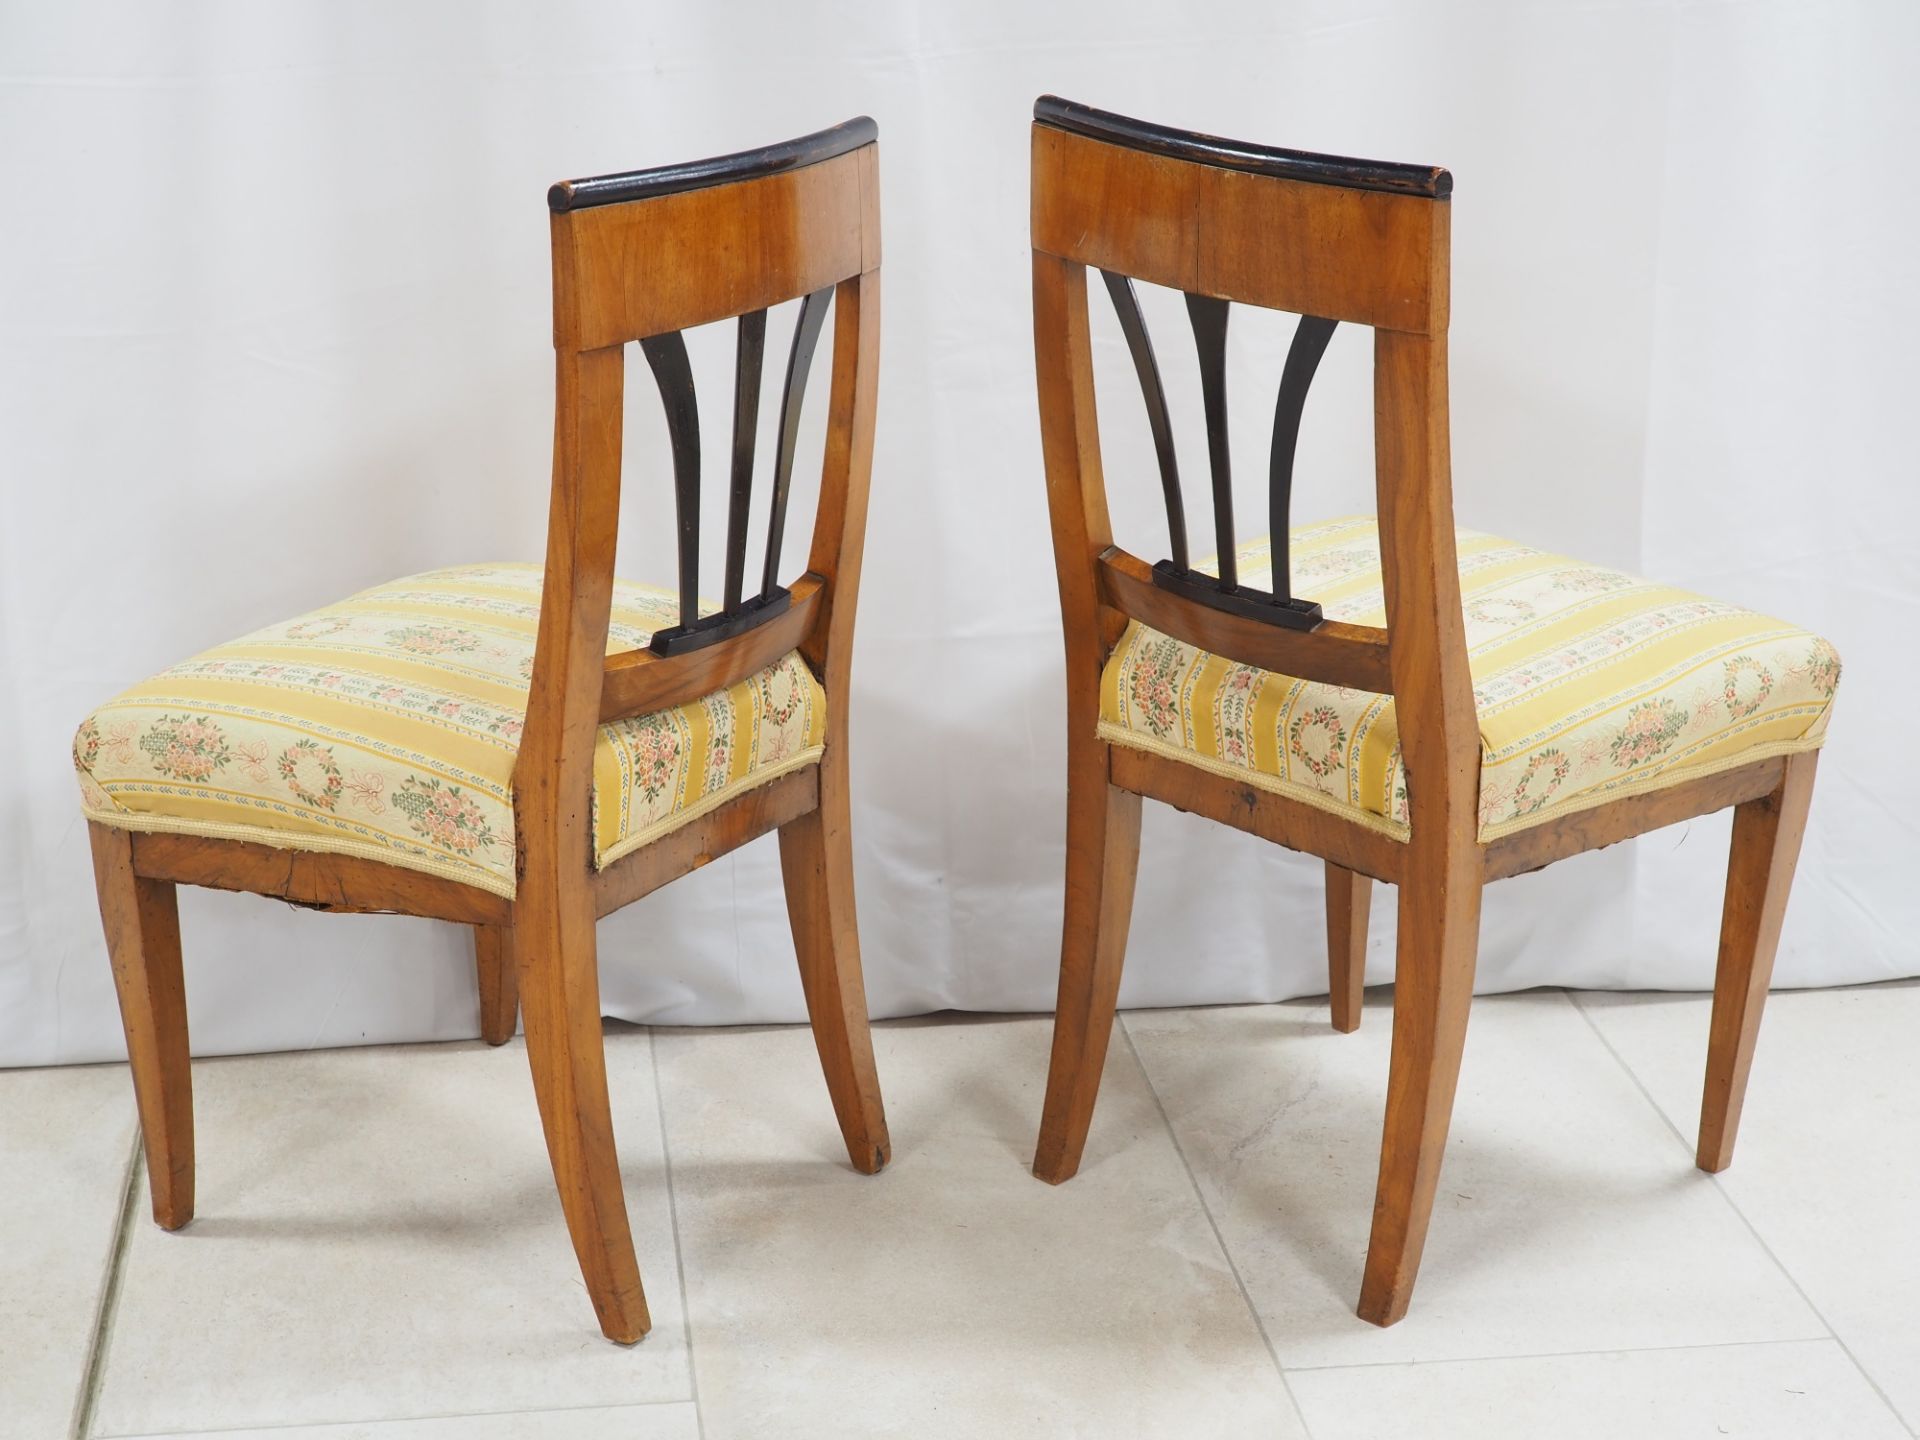 Paar Biedermeier Stühle, süddeutsch um 1810 - Bild 2 aus 3